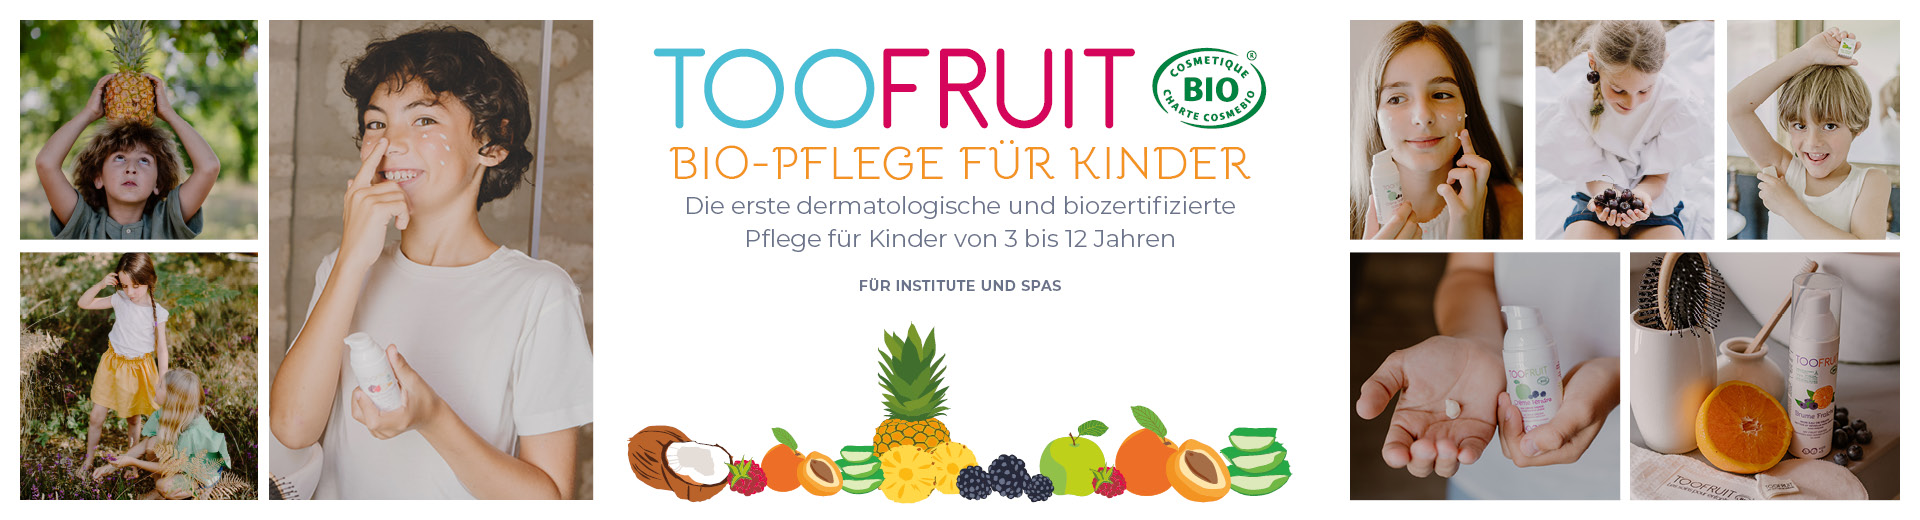 Toofruit – Biopflege für Kinder